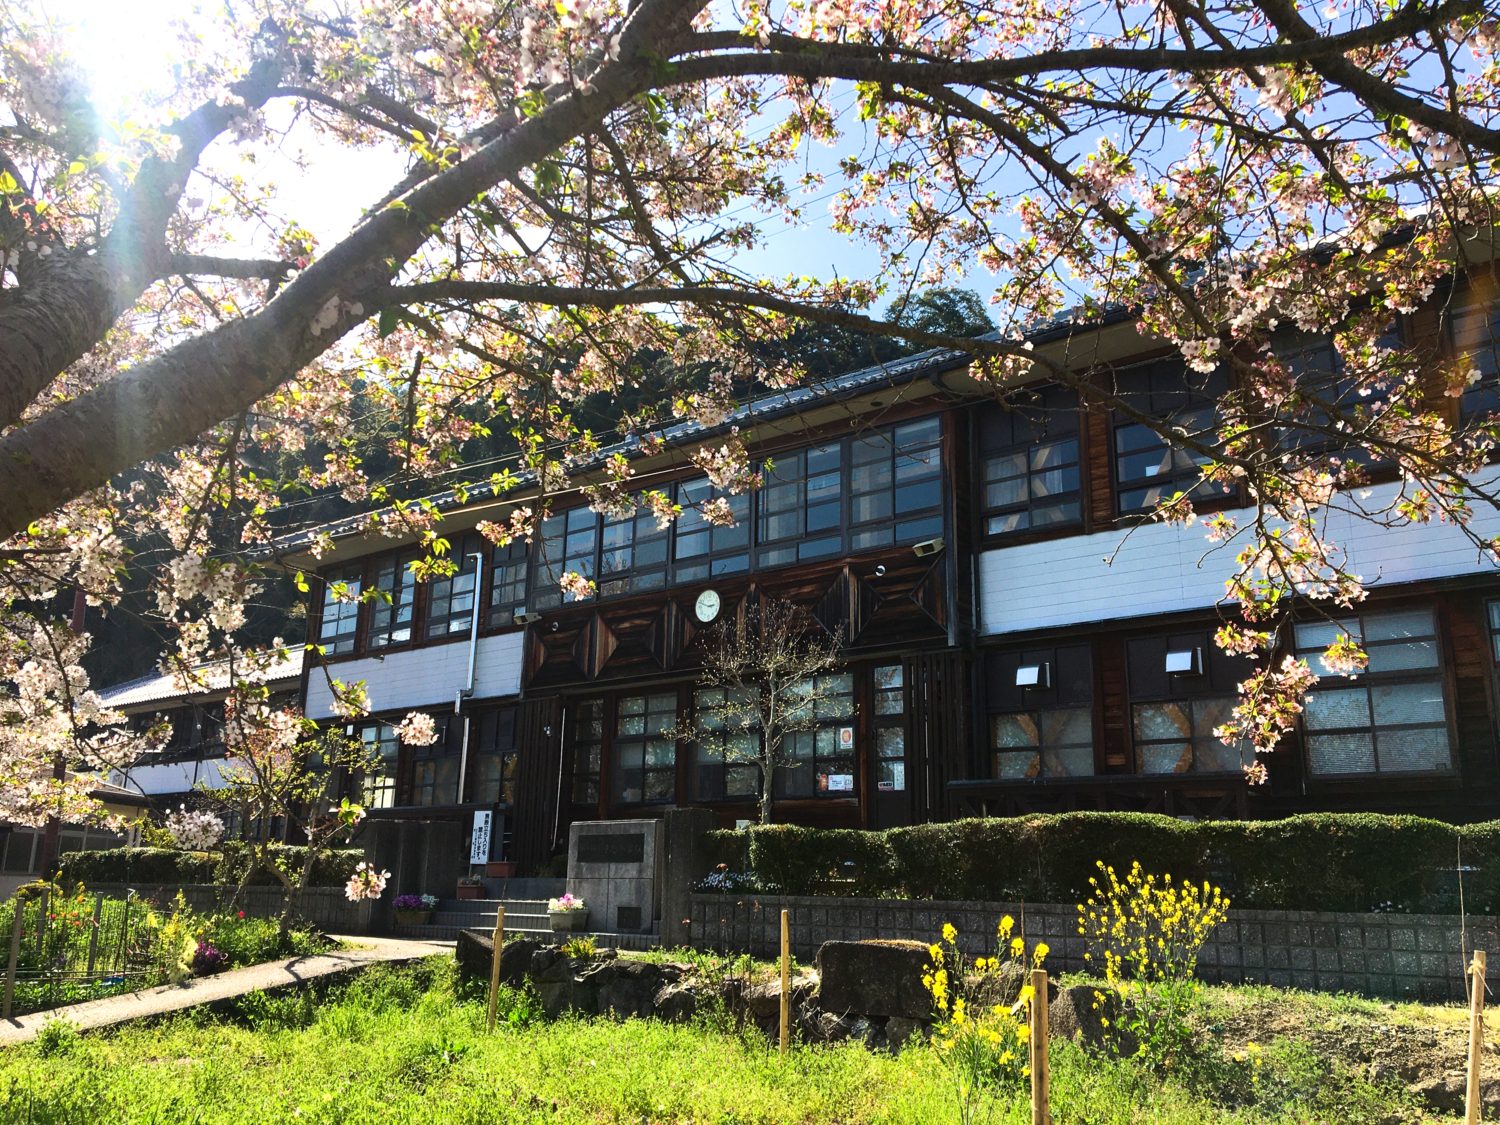 昭和初期を思い出させるような2階建ての木造校舎。手前には満開の桜の木。